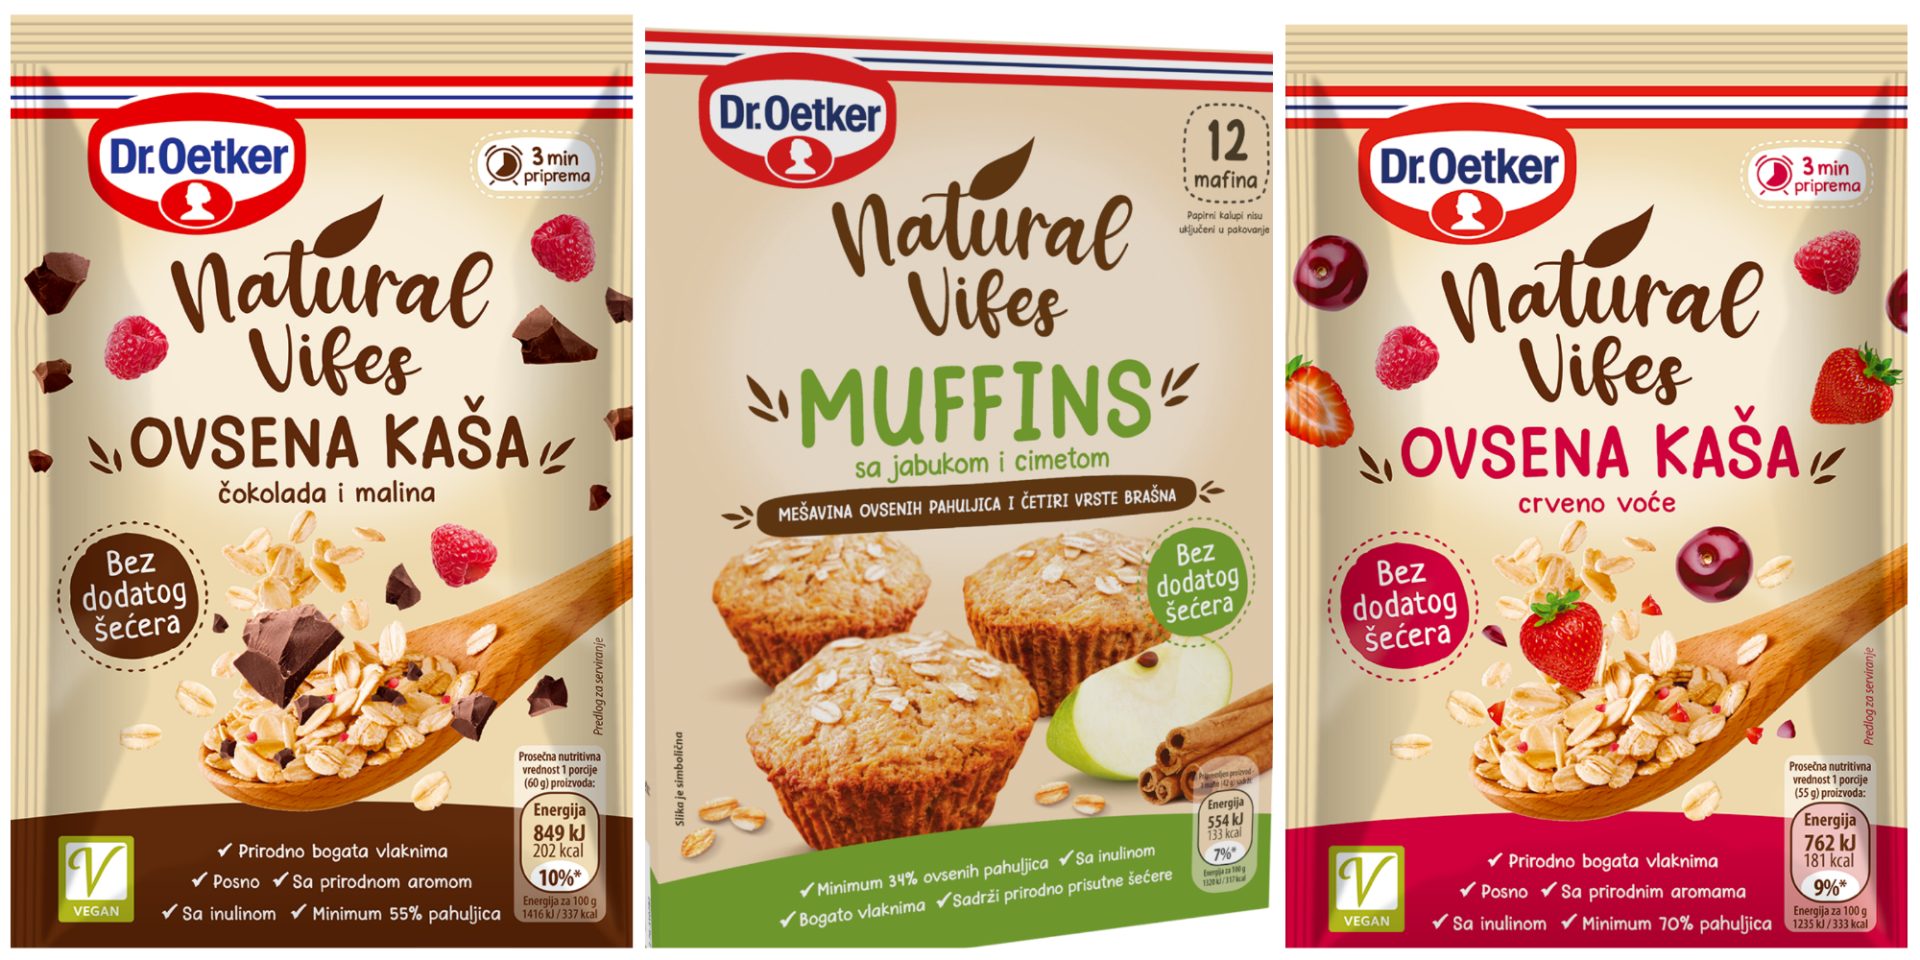 Natural Vibes je nova Dr. Oetker linija proizvoda bez dodatog šećera